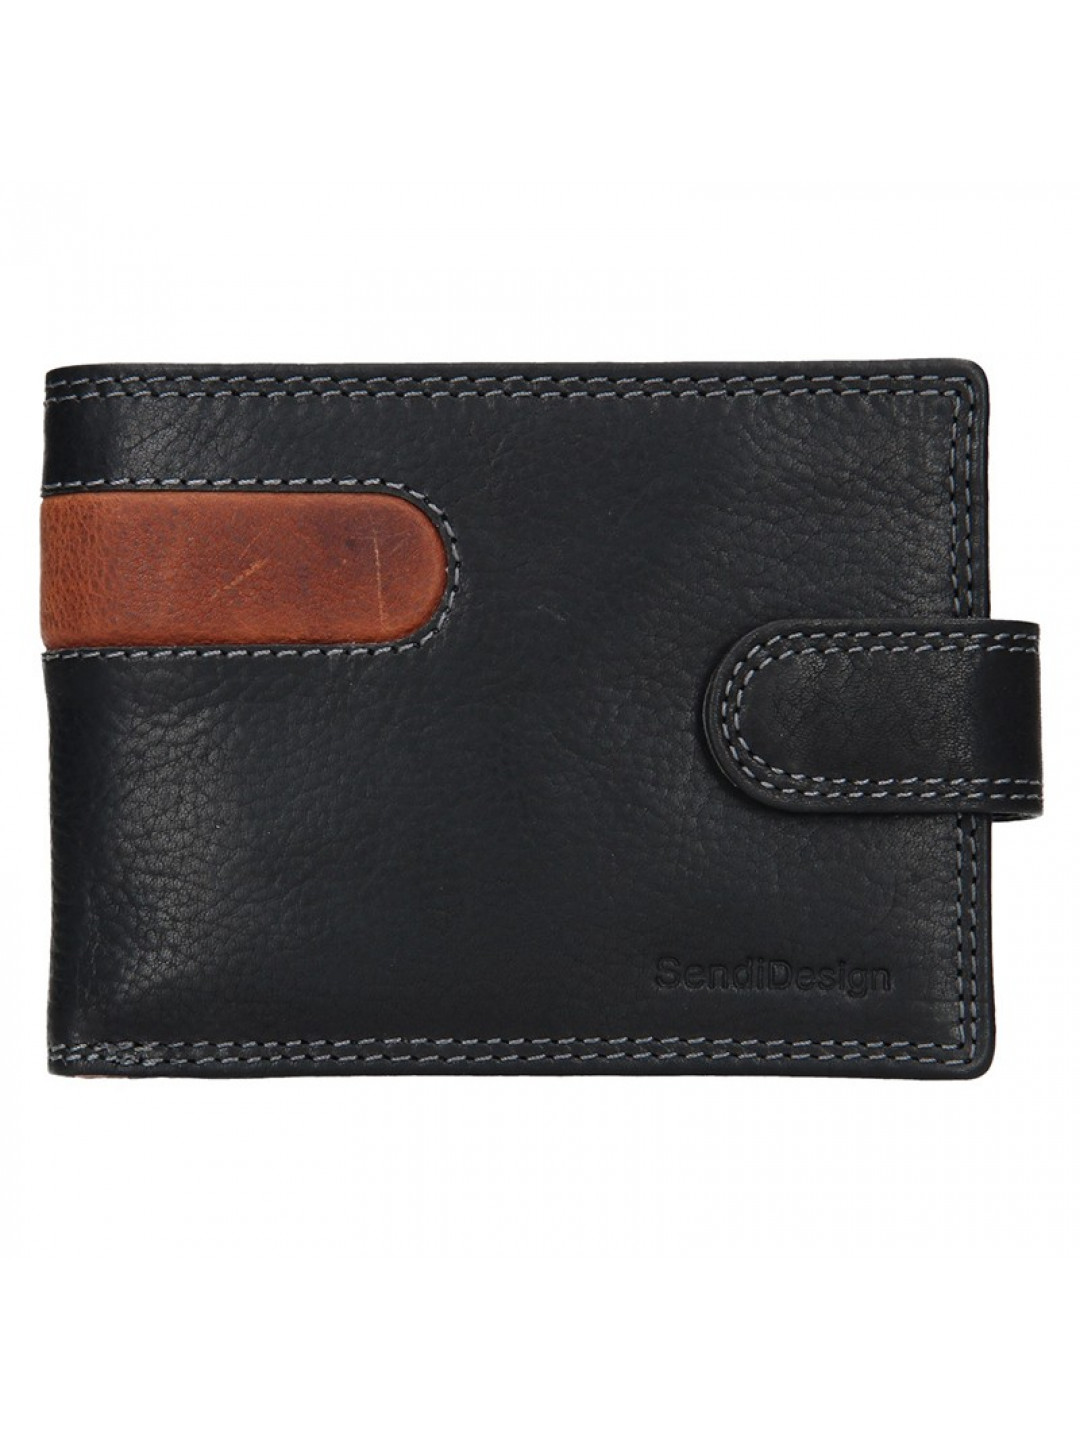 Pánská kožená peněženka SendiDesign Martin – černo-hnědá